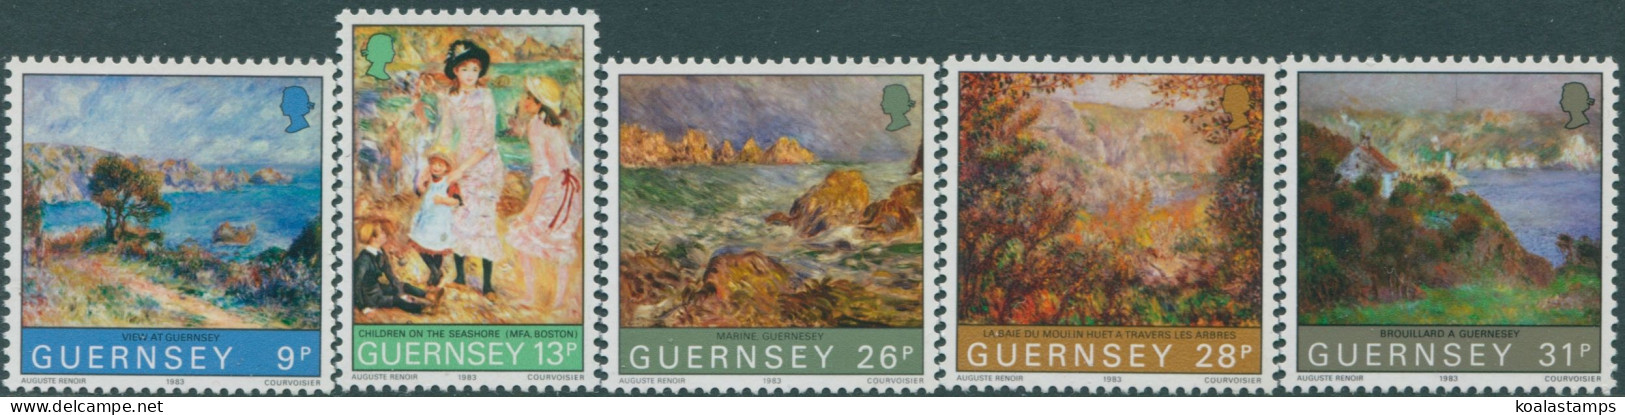 Guernsey 1983 SG277-281 Renoir Visit MNH - Guernsey